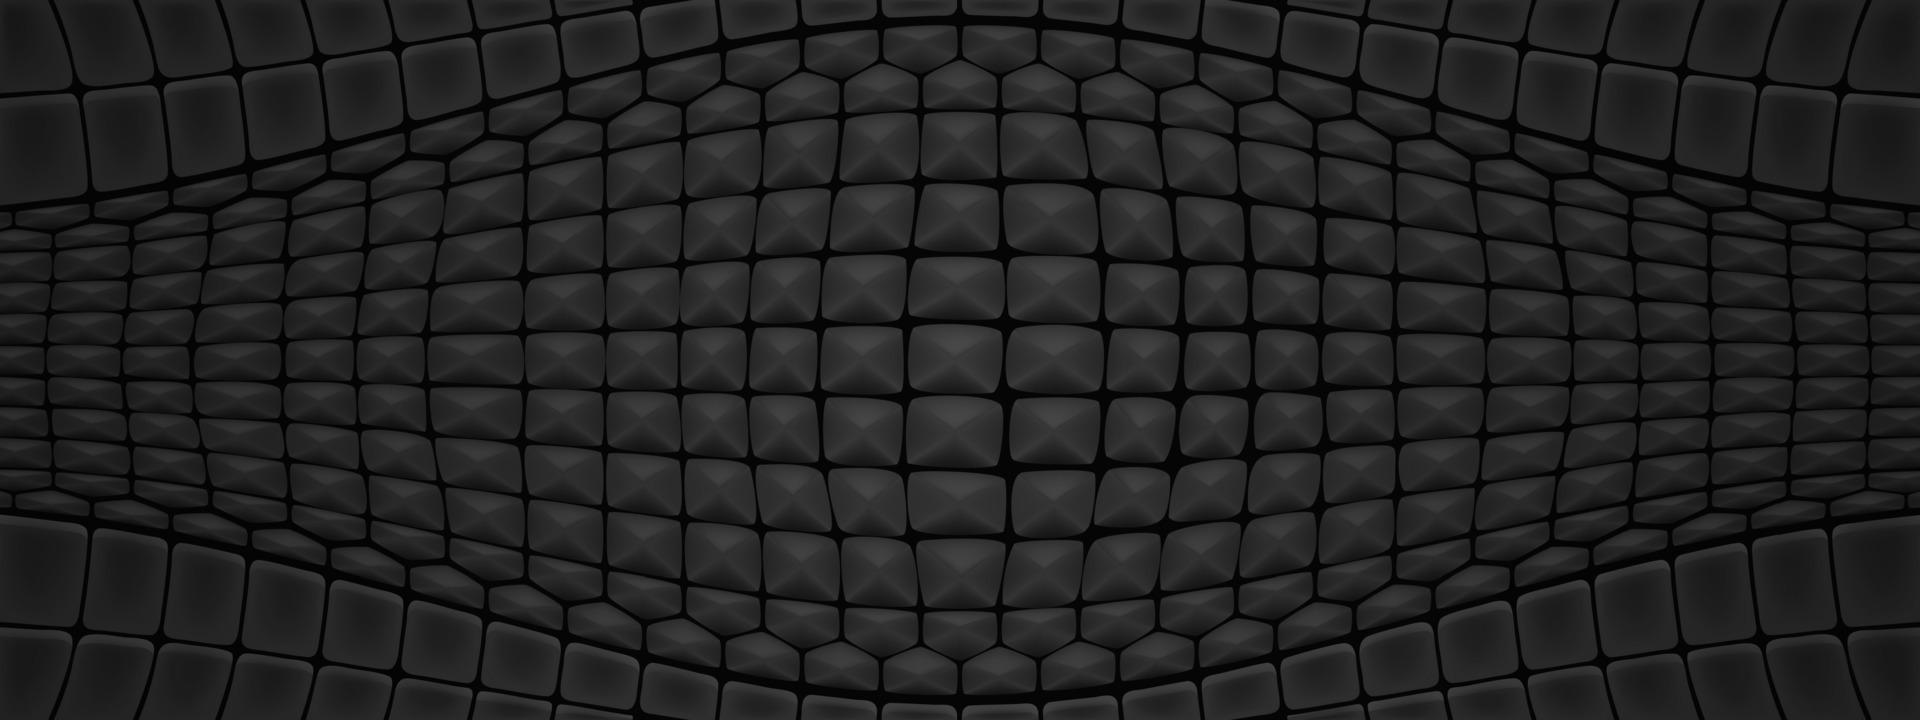 zwart reptiel huid structuur achtergrond vector